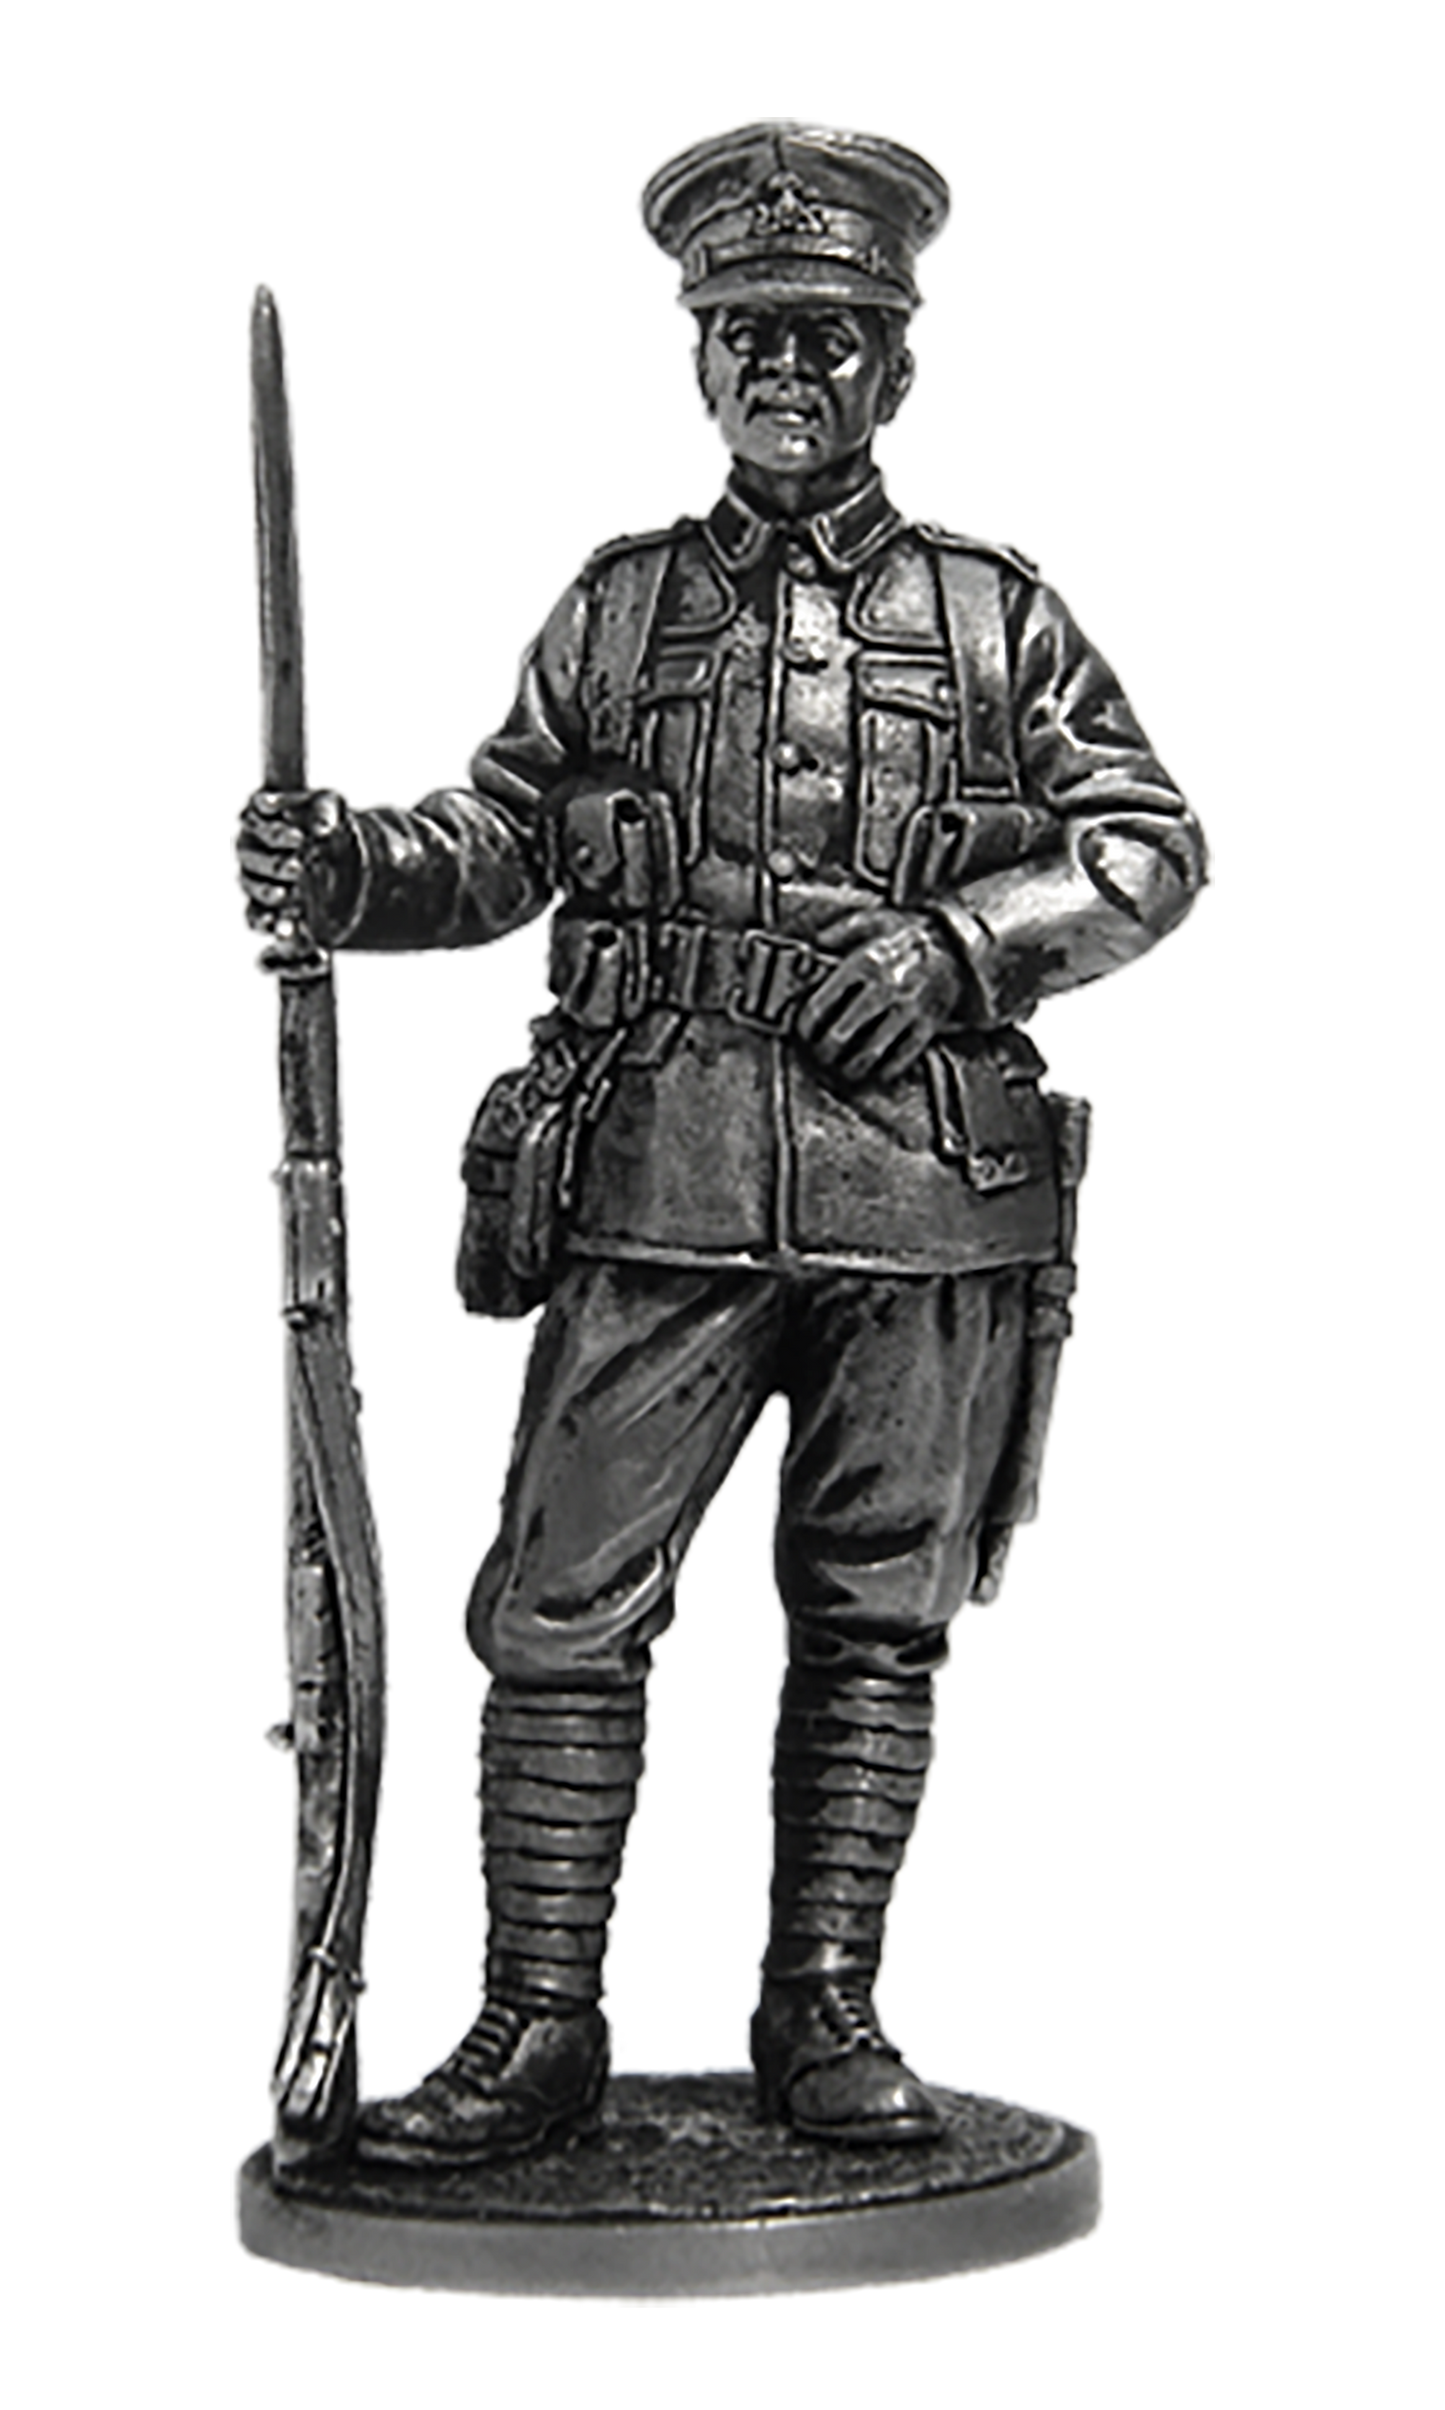 EK-WW1-2 - рядовой пехотного полка. Великобритания, 1914-18 гг.